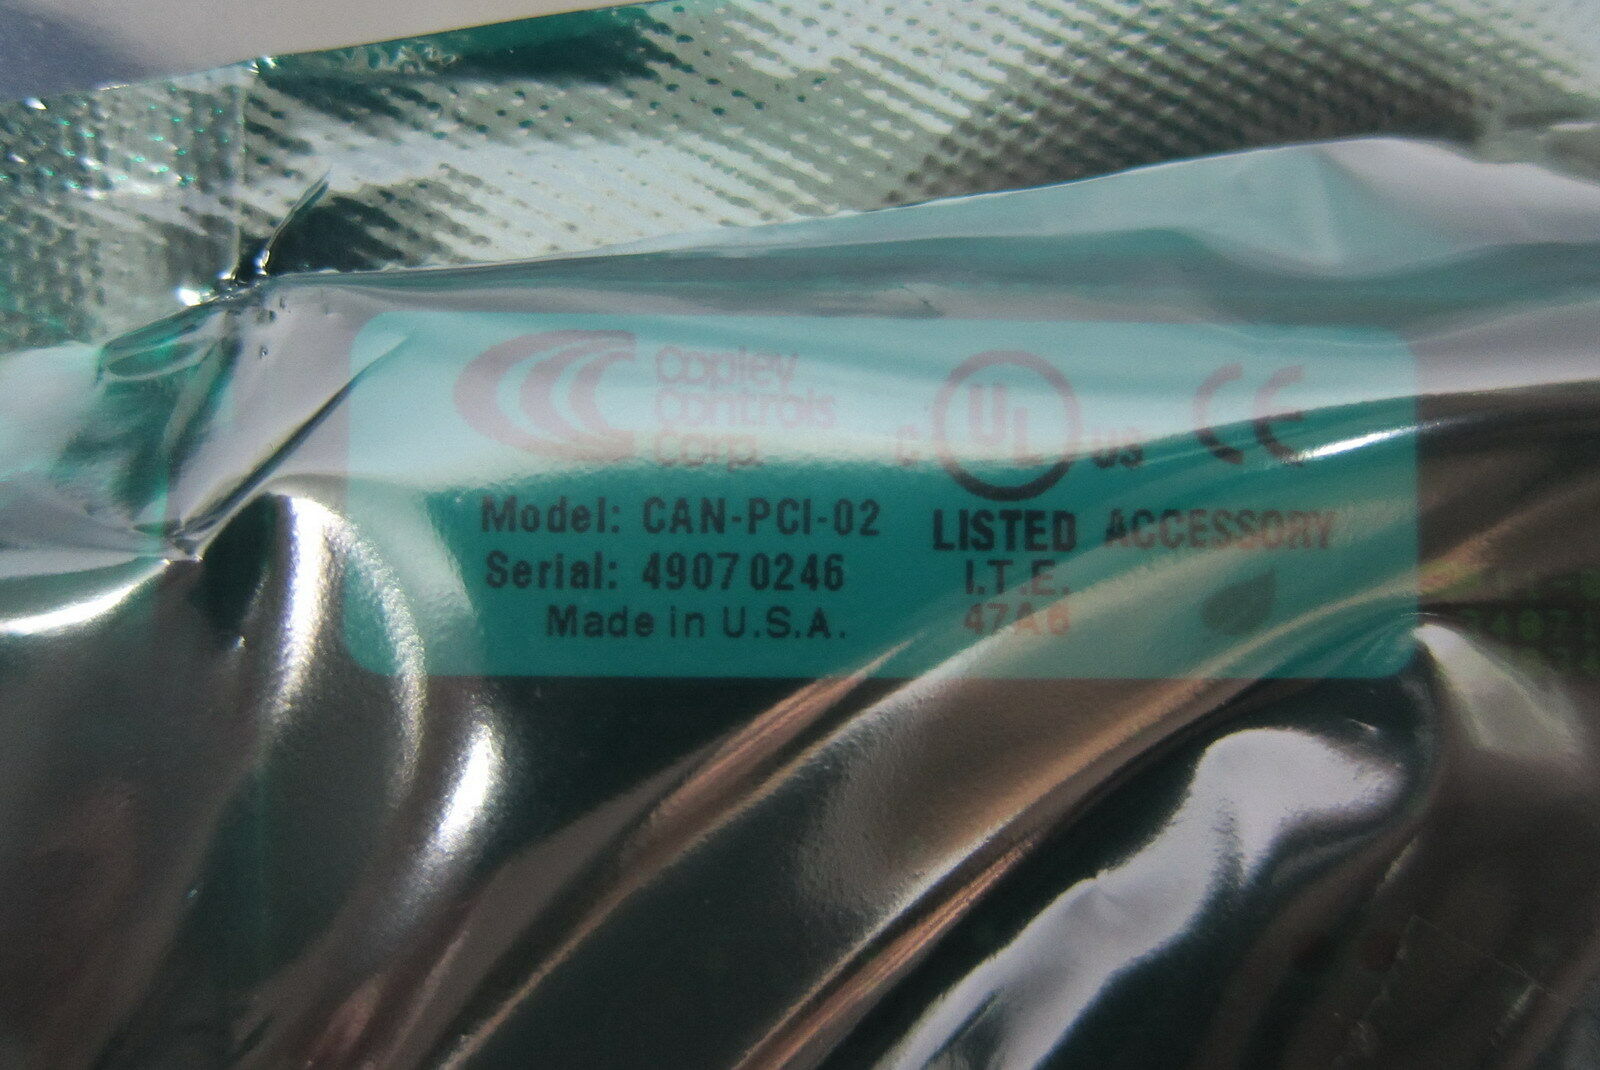 科普利控制CAN-PCI-02 07-01156-000 Rev A PCI卡 原装正品 现货供应 优惠价 Copley Controls,CAN-PCI,科普利,PCI卡